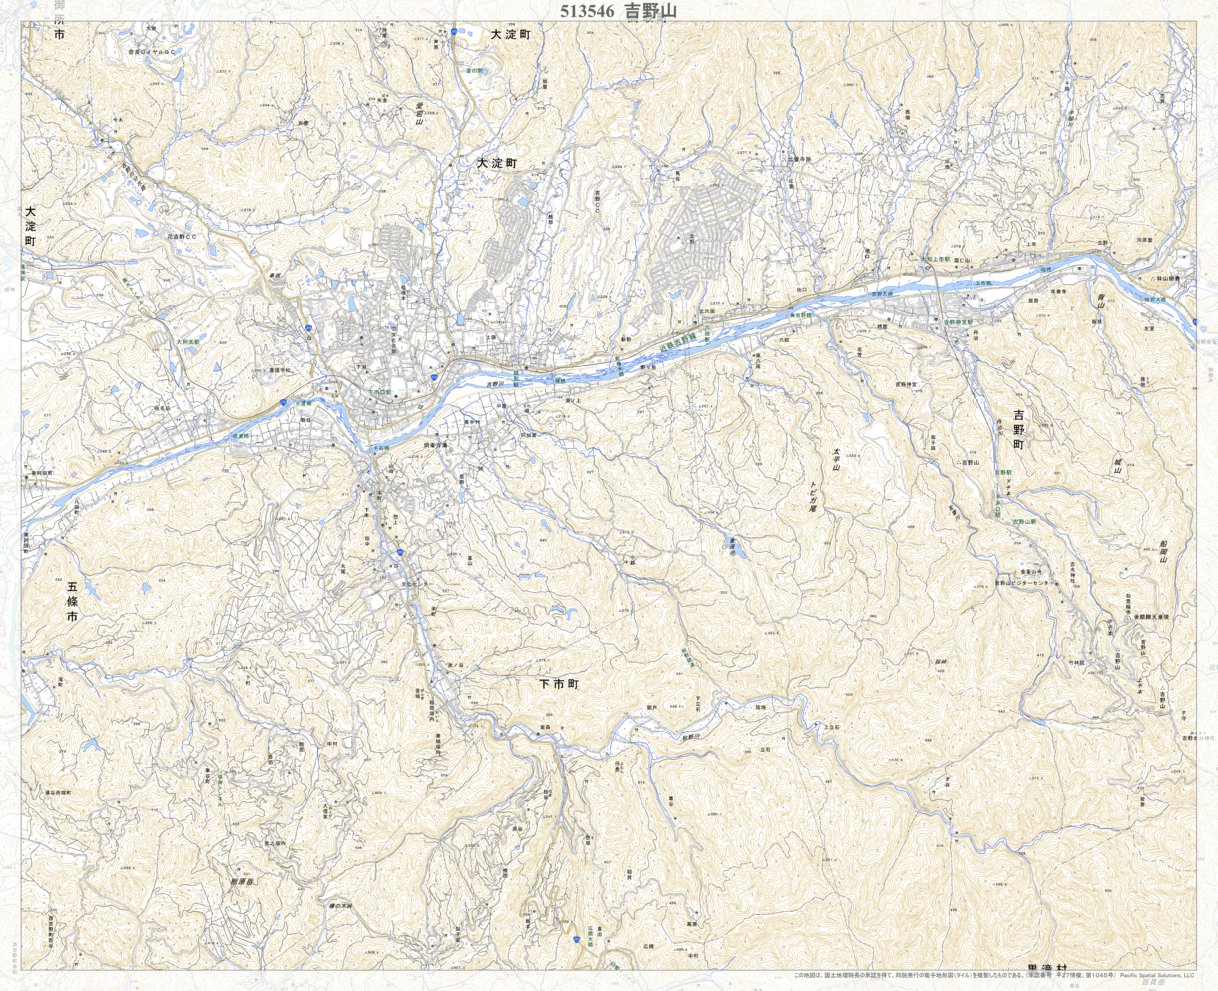 513546 吉野山（よしのやま Yoshinoyama）, 地形図 Map by Pacific 